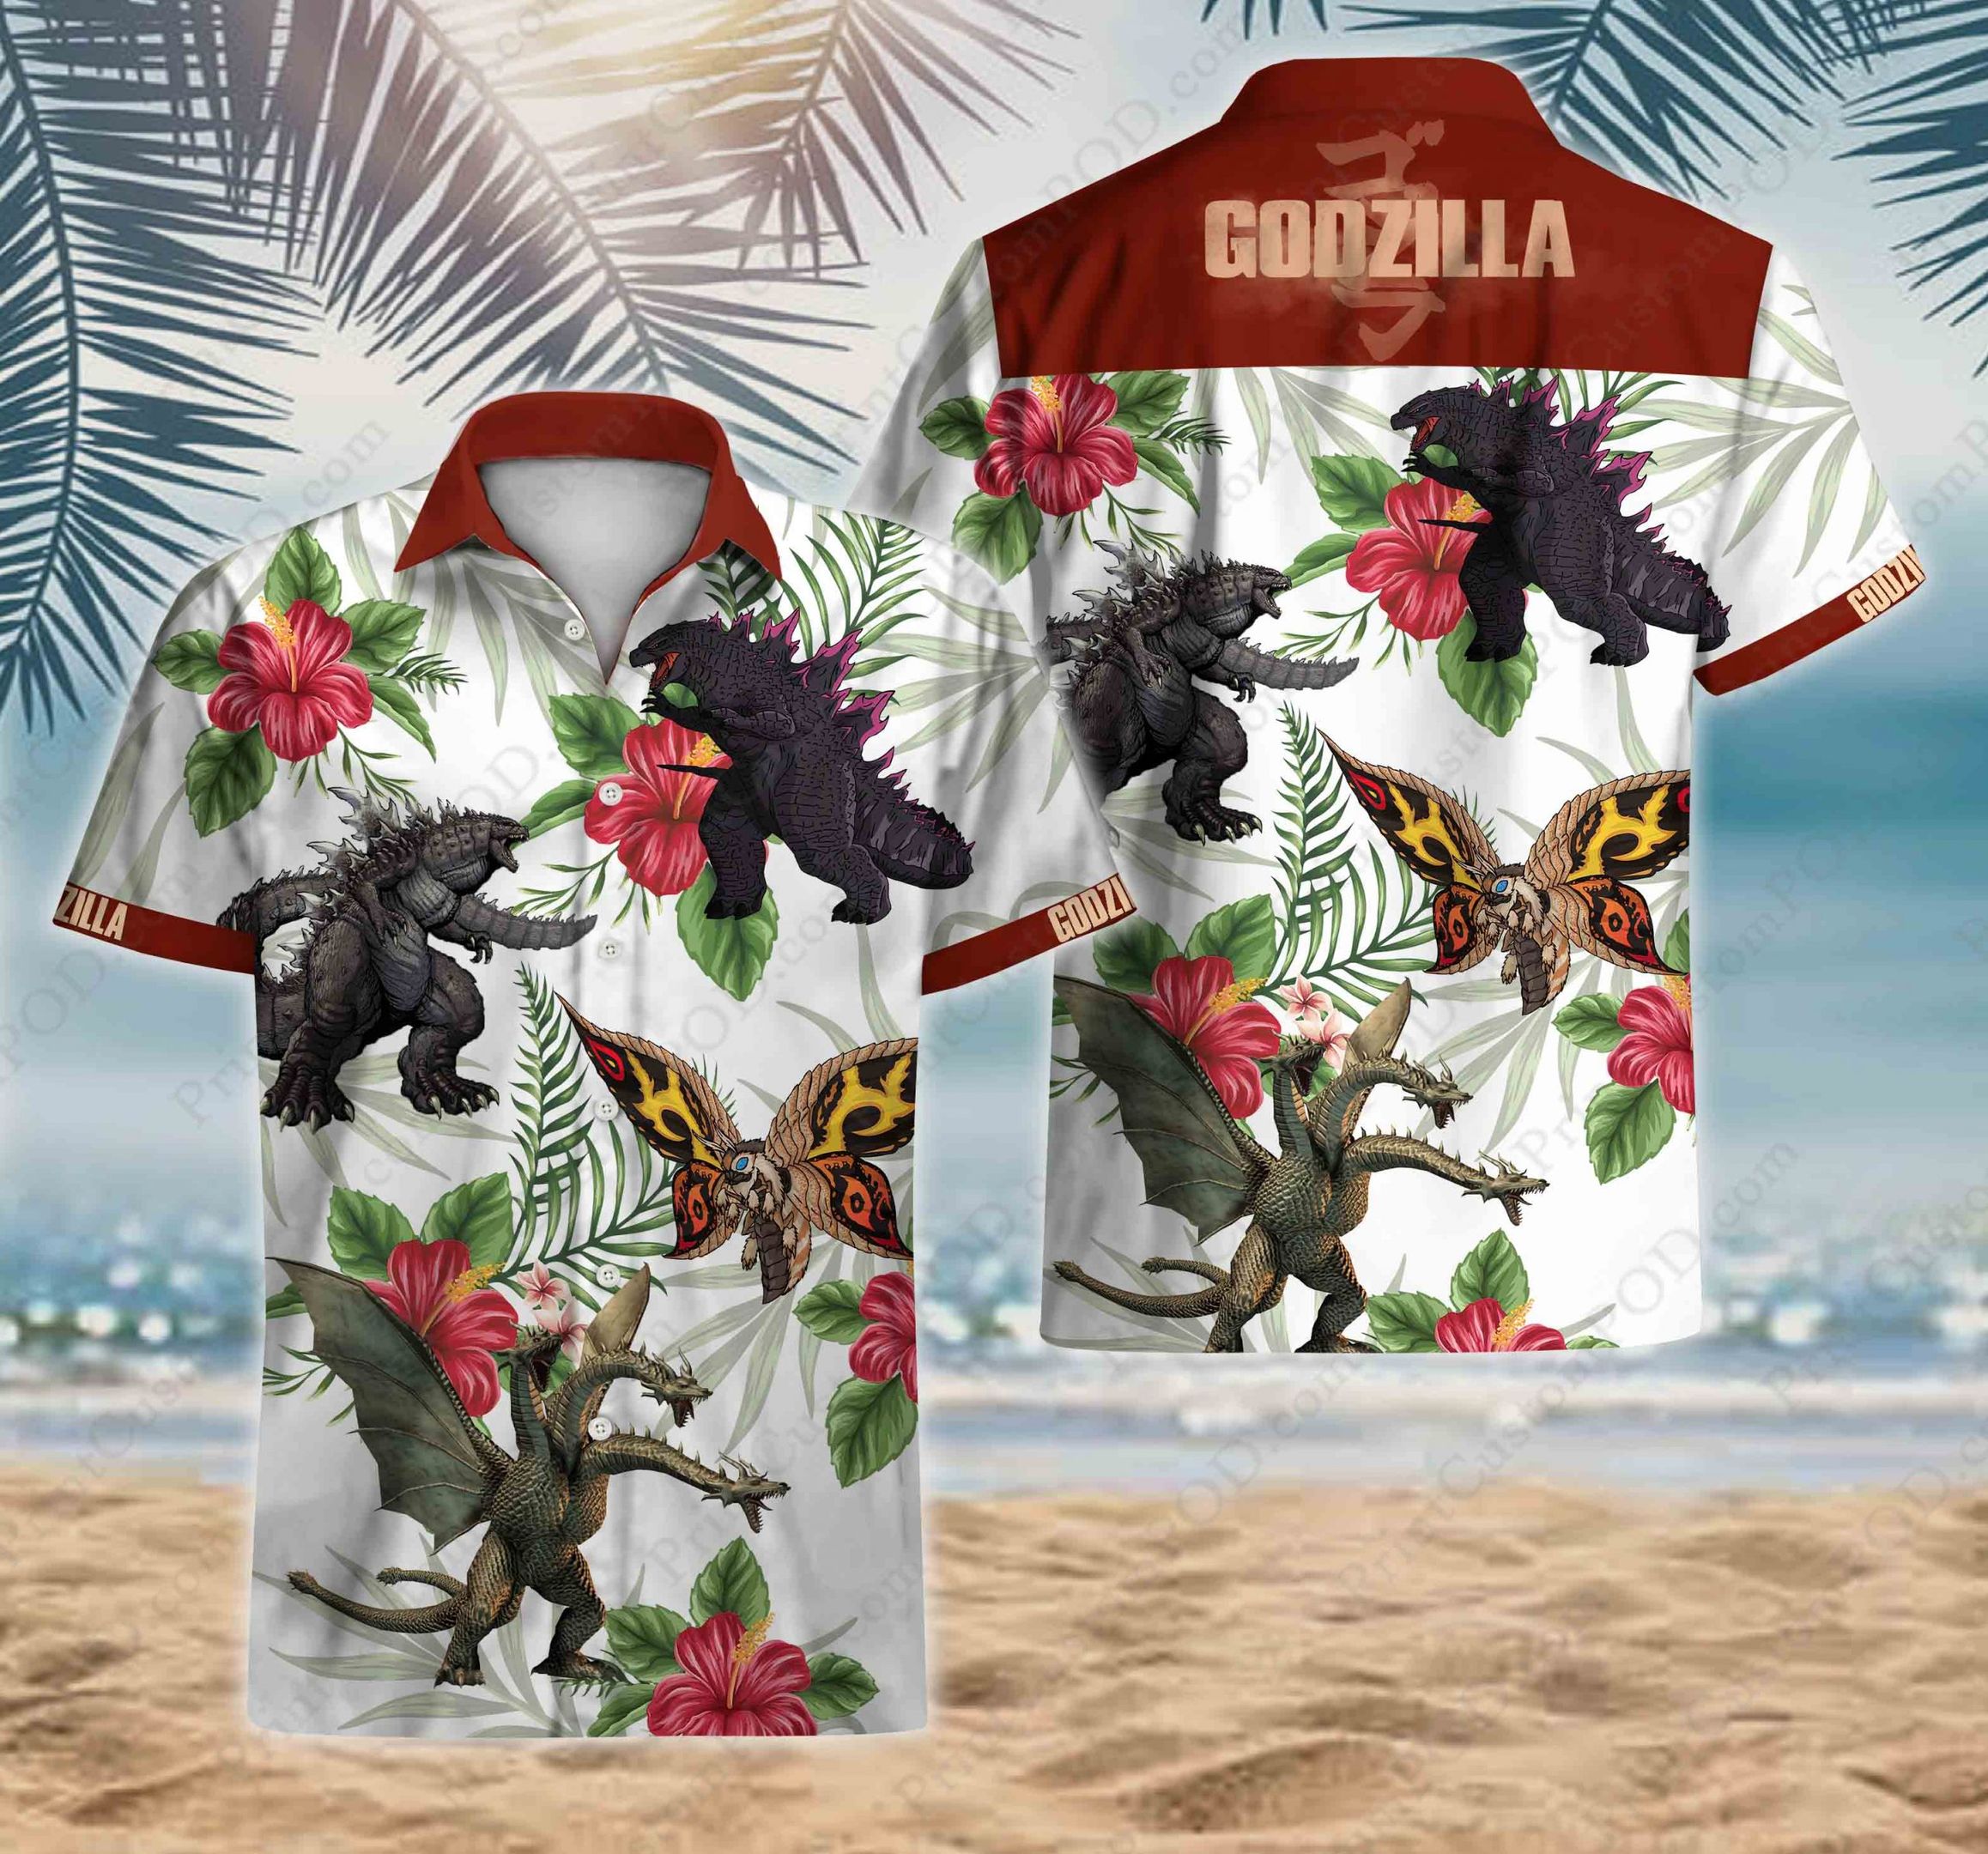 3D Godzilla Surfing Funny Unisex Hawaiian Shirt Summer Shirt Full Size S-5XL